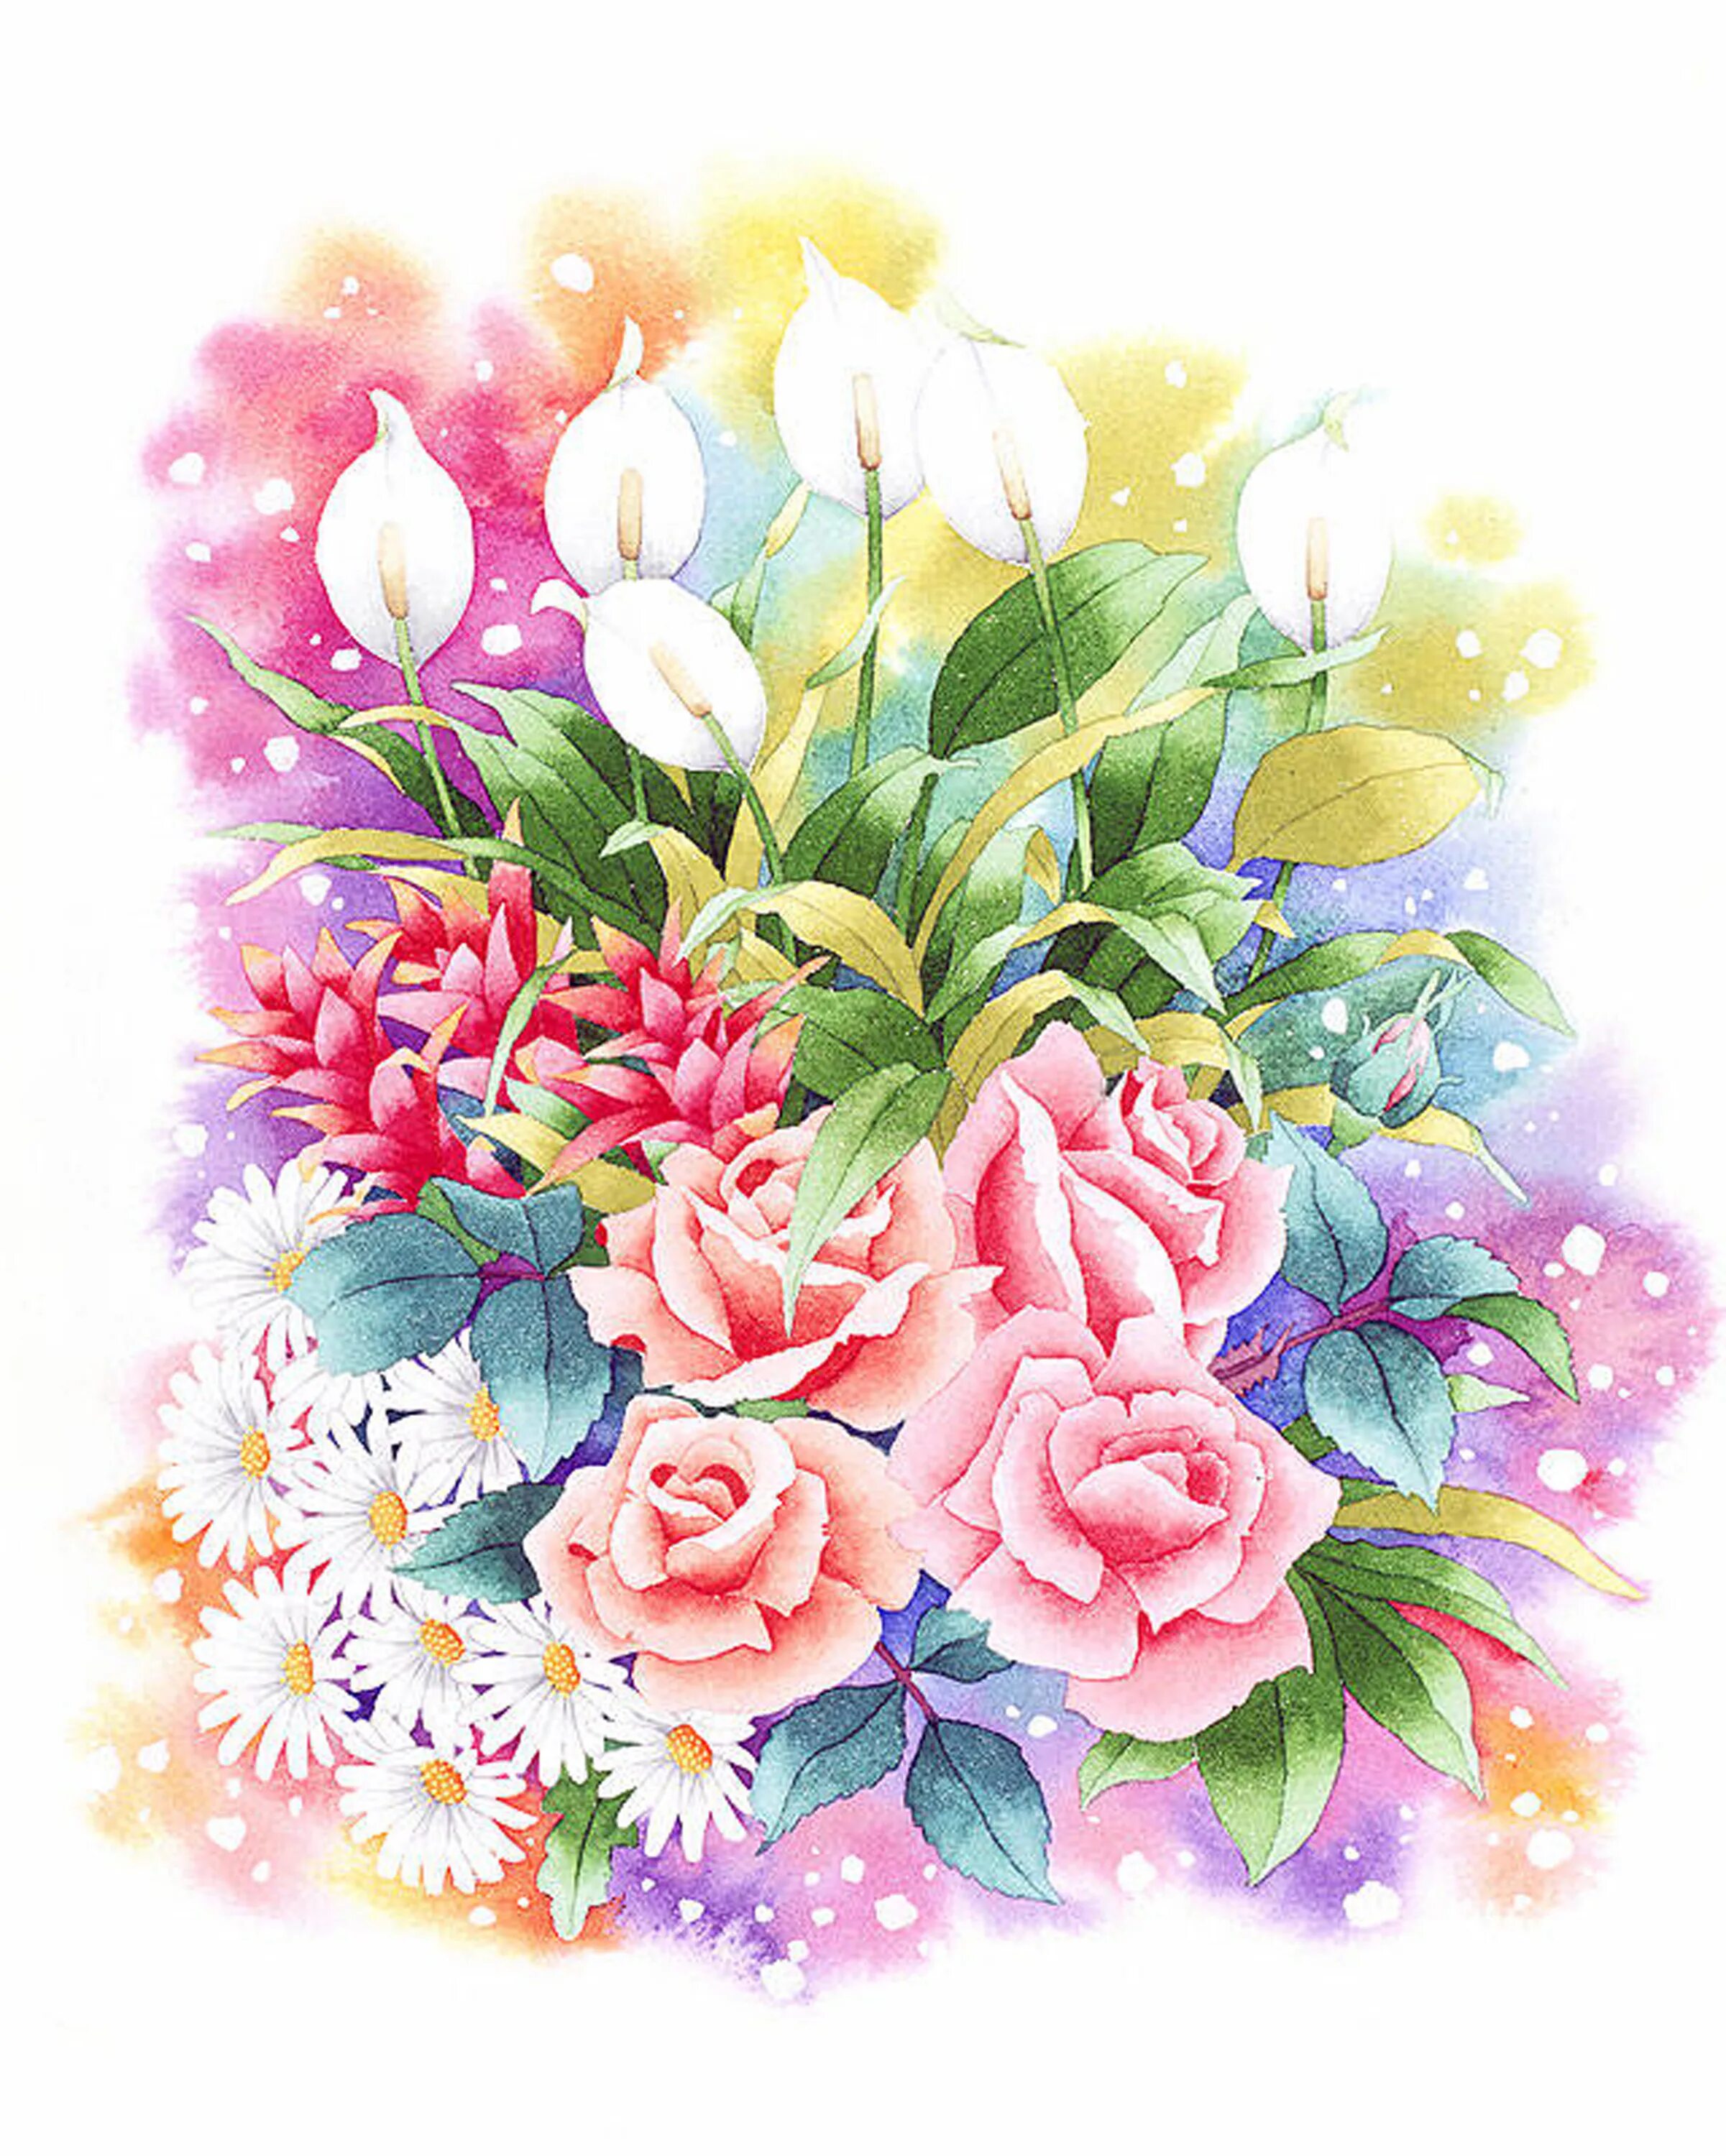 Ибараги Йосиюки. Ибараги Йосиюки (Ibaragi Yoshiyuki). Ибараги Йосиюки акварель. Акварельные цветы.